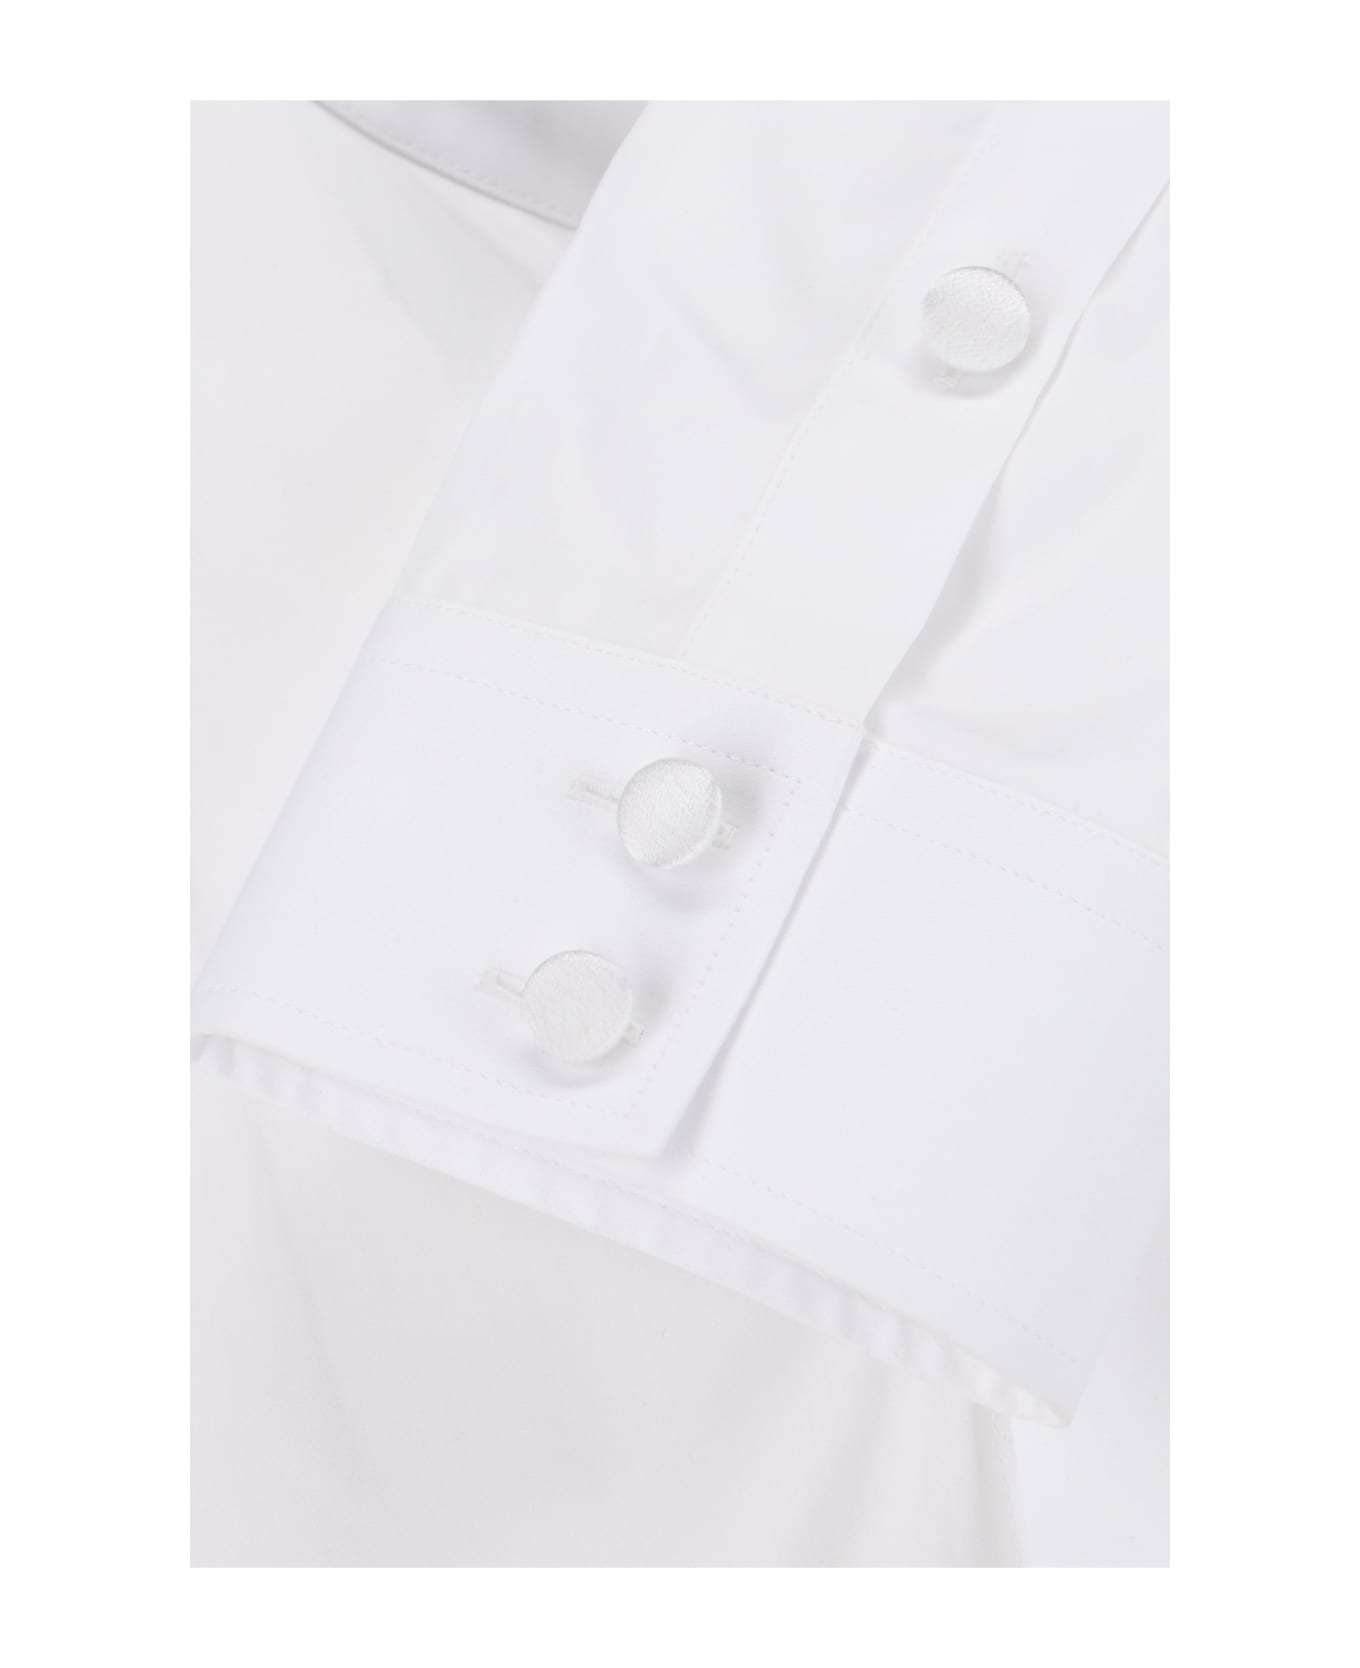 Balmain Shirt In White Cotton - White